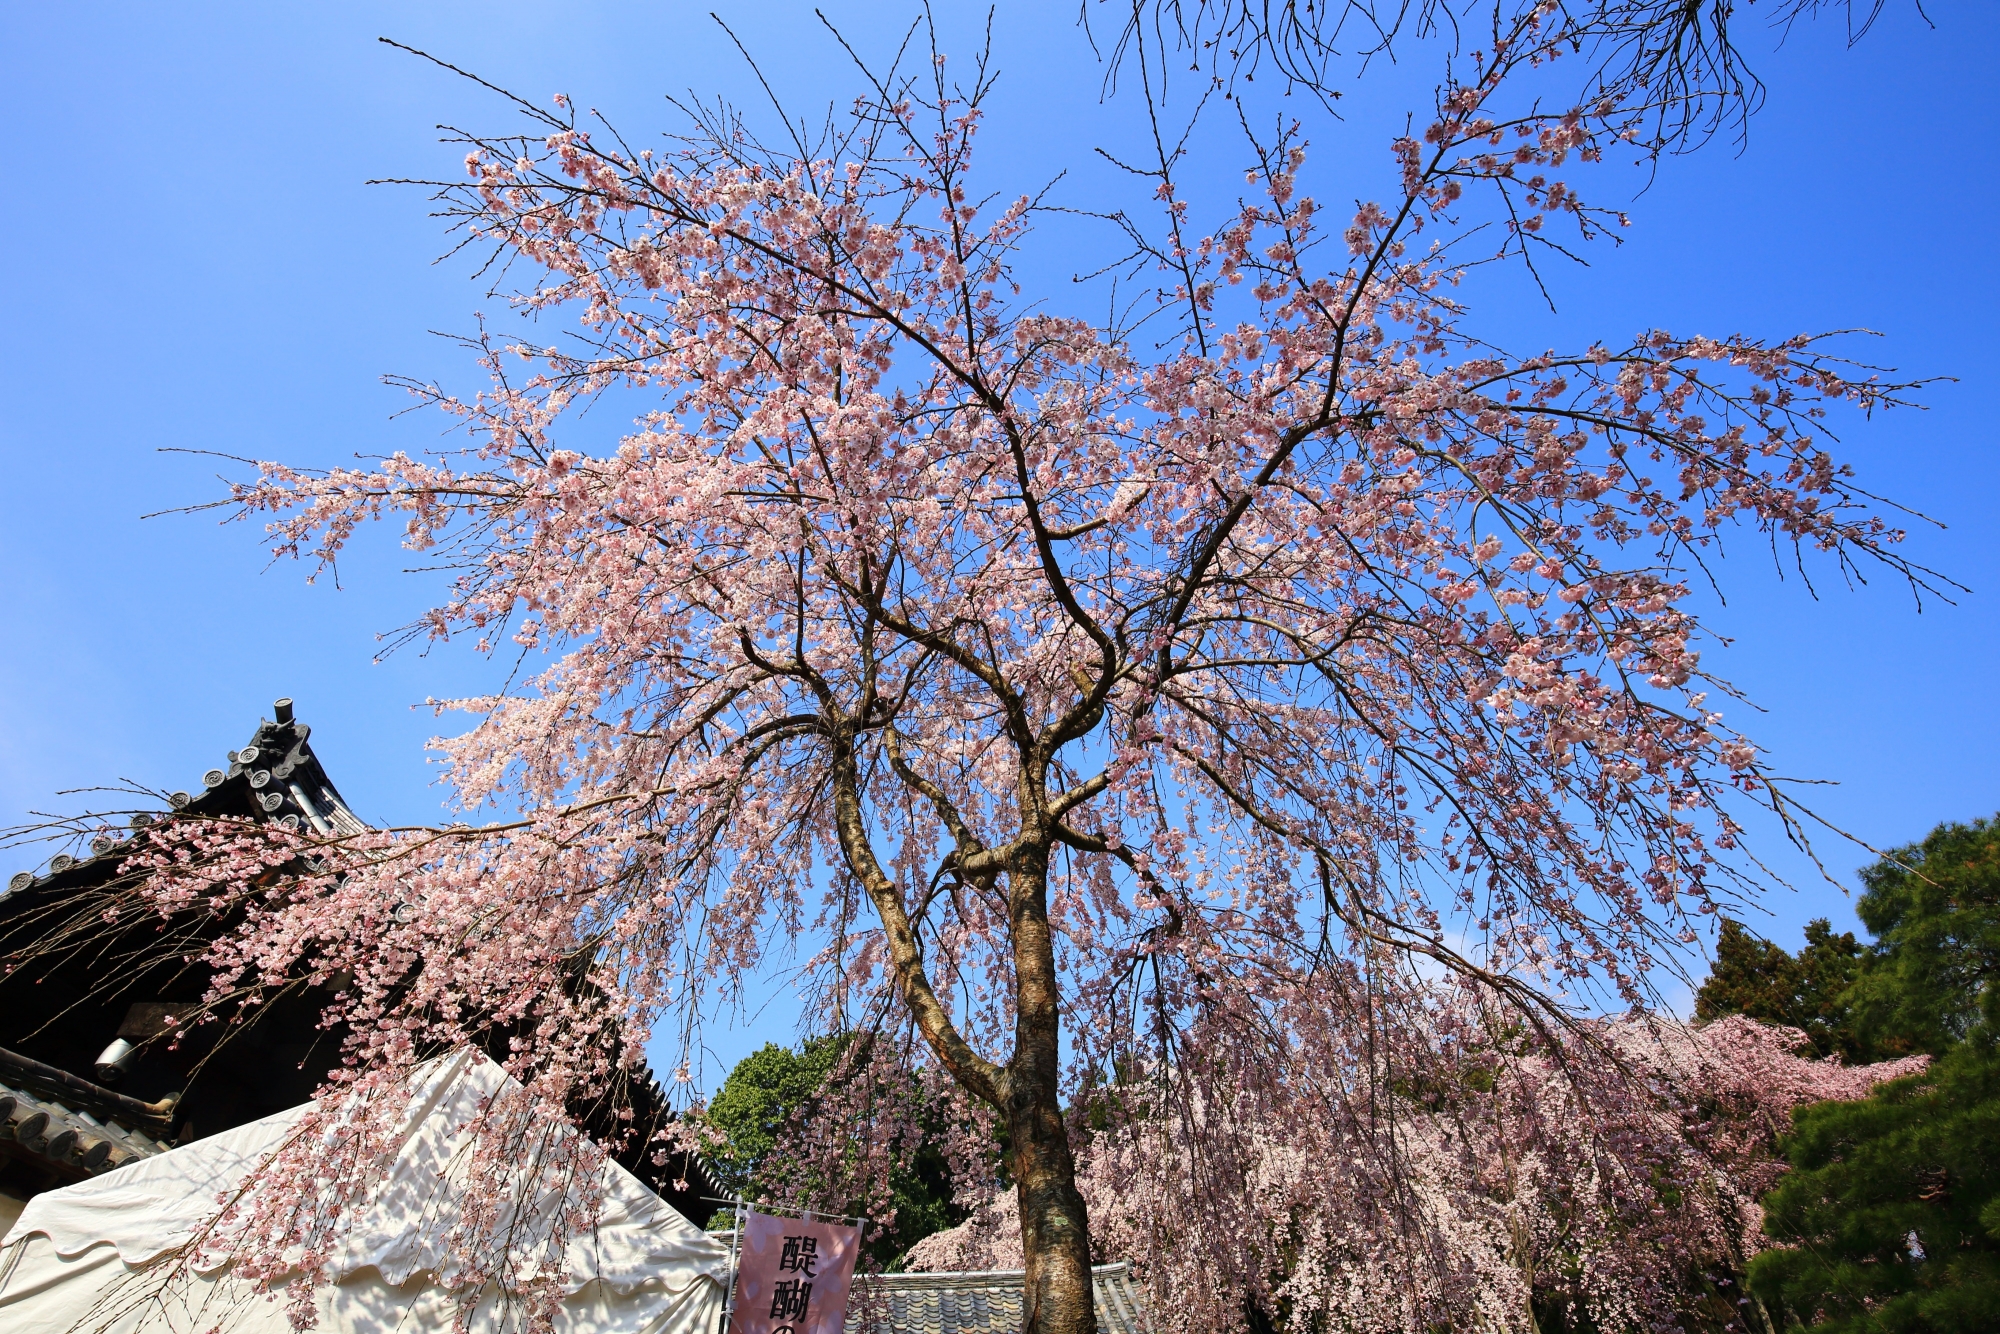 太閤しだれ桜のクローン桜として有名な三宝院の桜